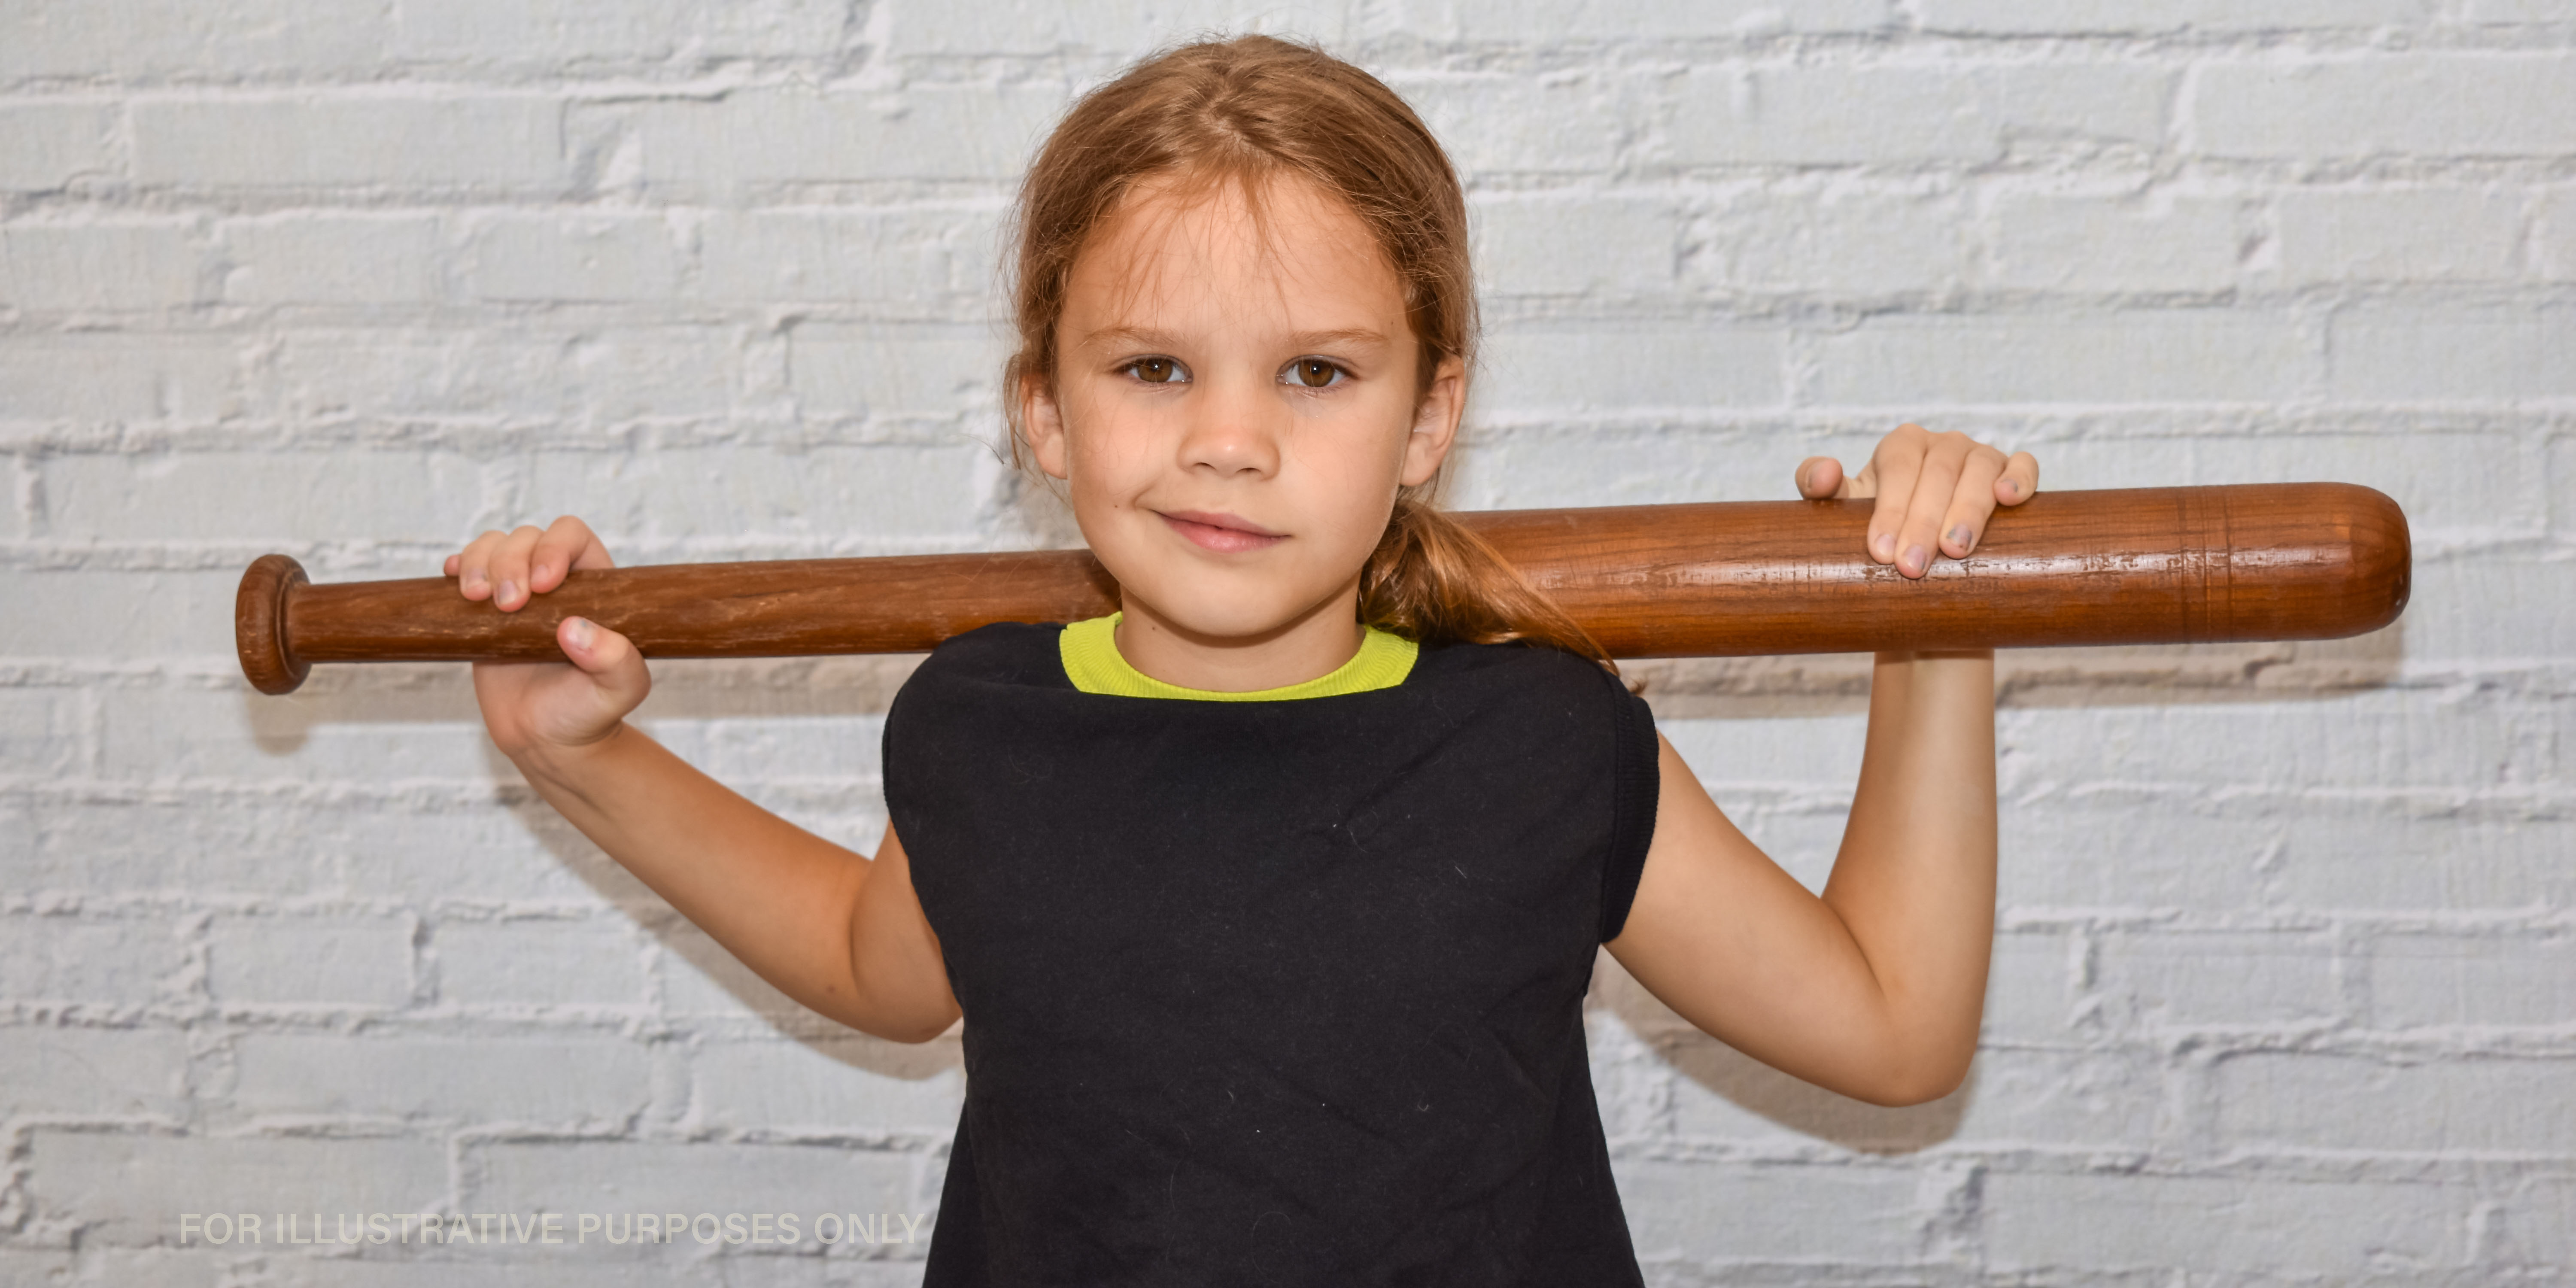 Little girl with a baseball bat. | Source: Shutterstock